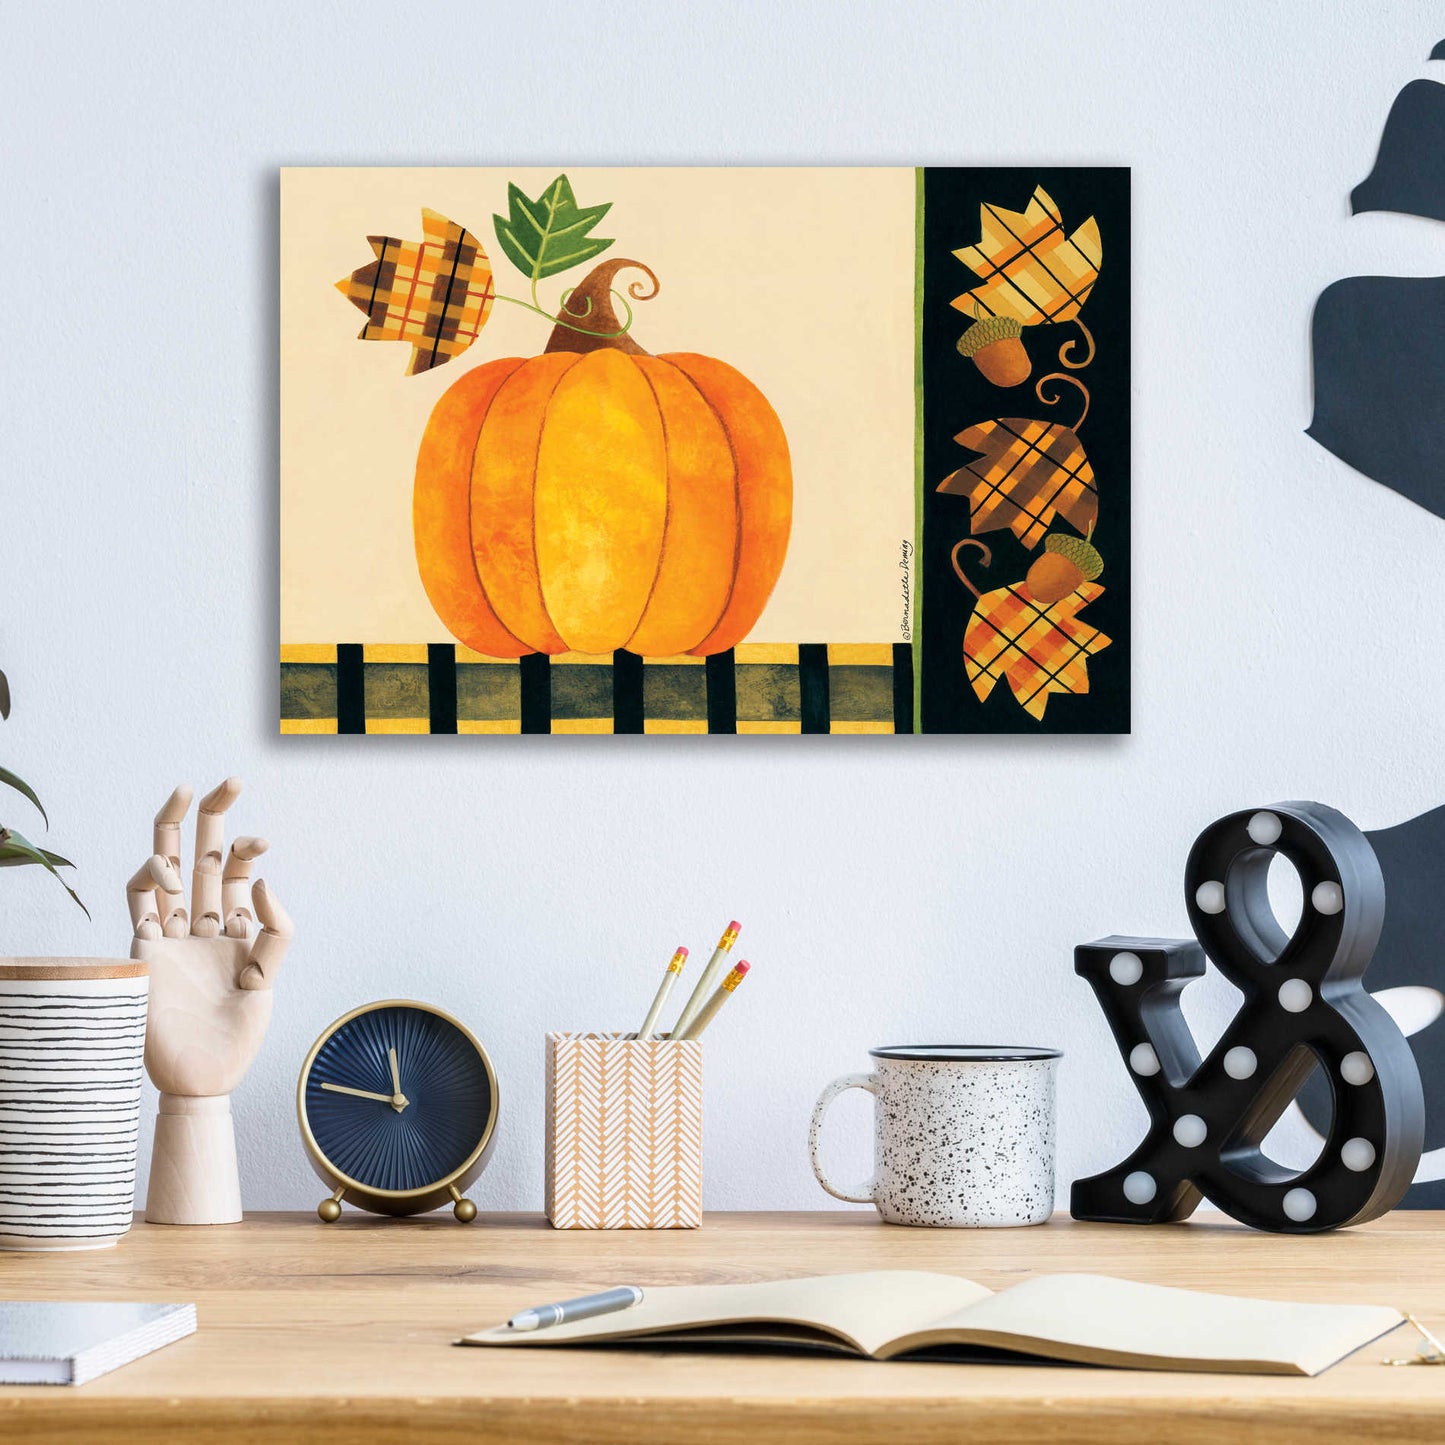 Epic Art "Pumpkin" by Bernadette Deming, Acrylic Glass Wall Art,16x12